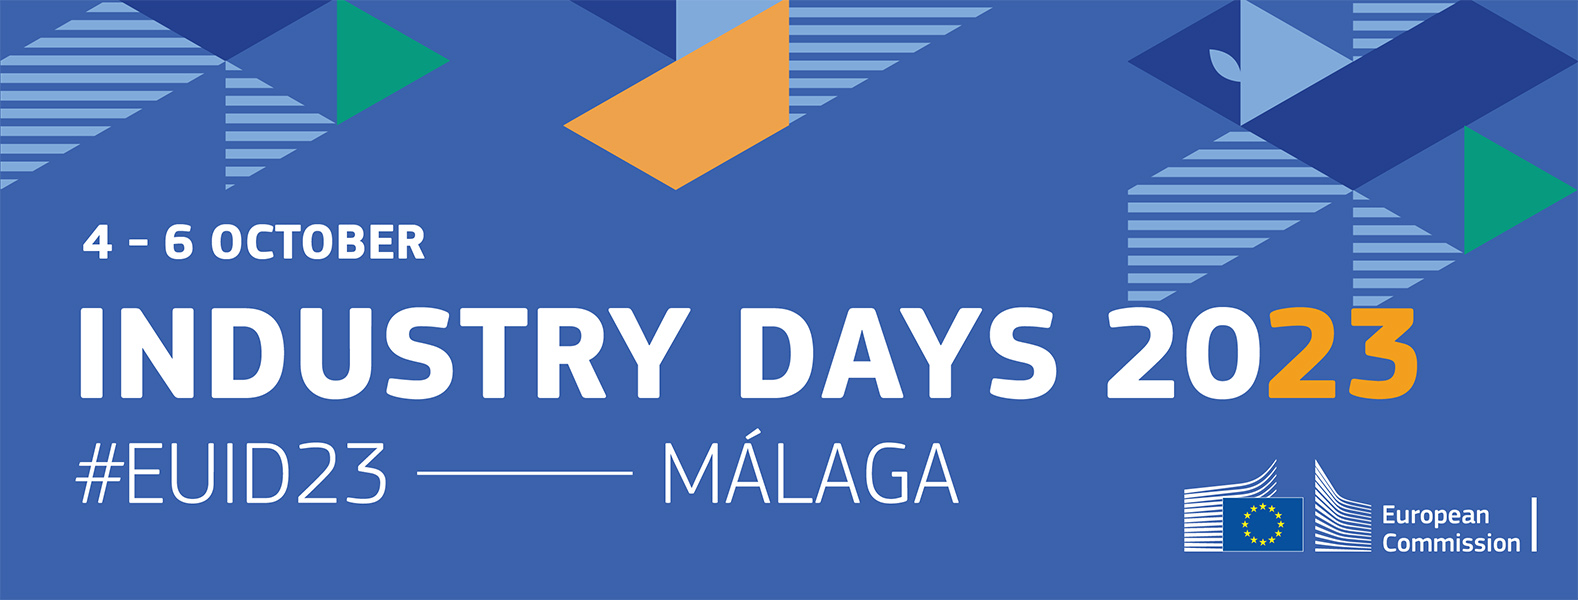 Los EU Industry Days 2023 se celebrarán en Málaga del 4 al 6 de octubre